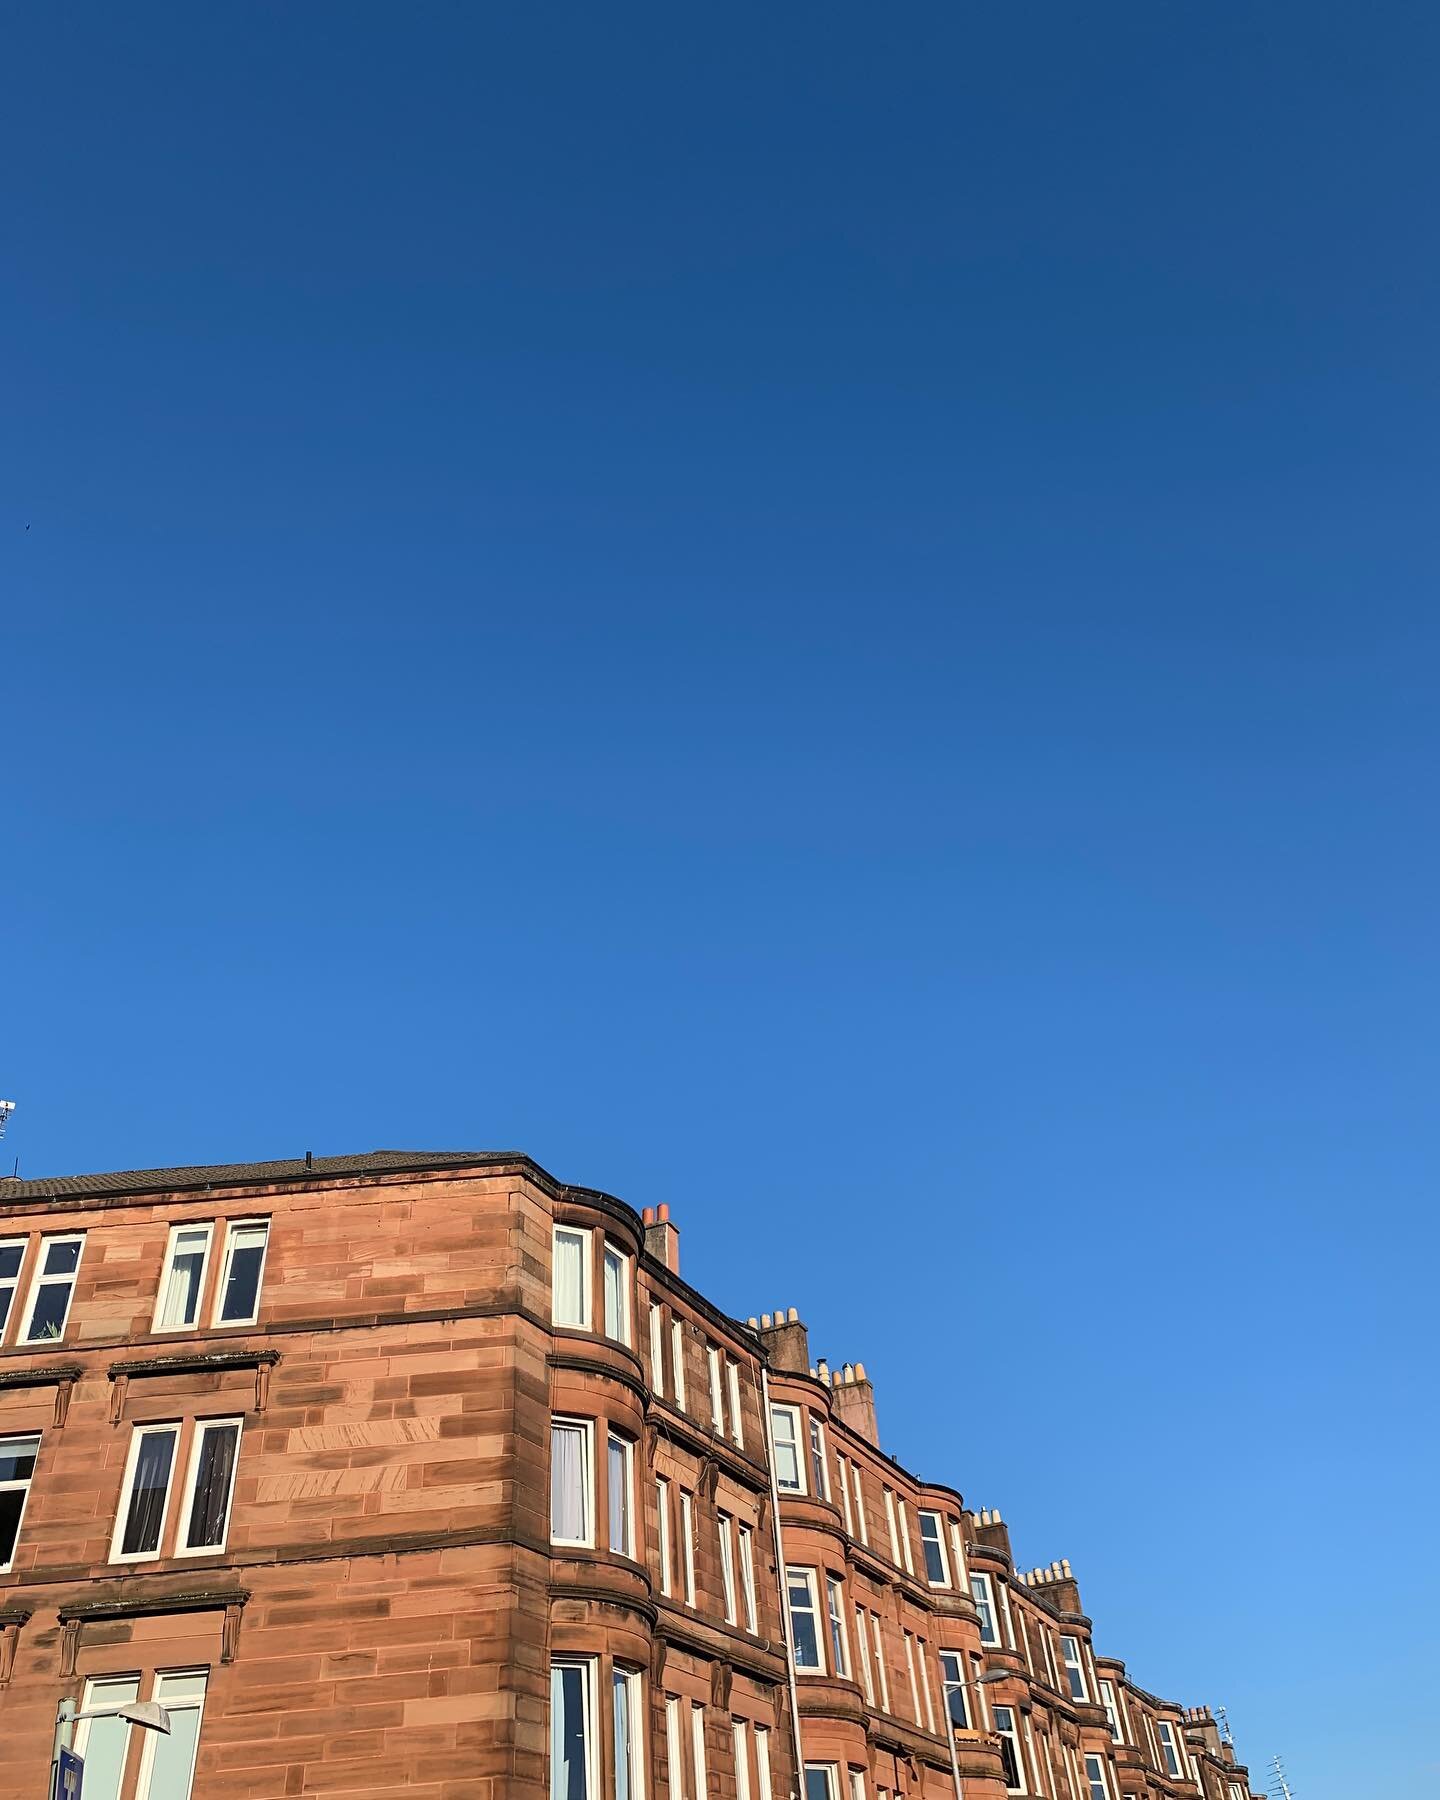 Glasgow, no filter